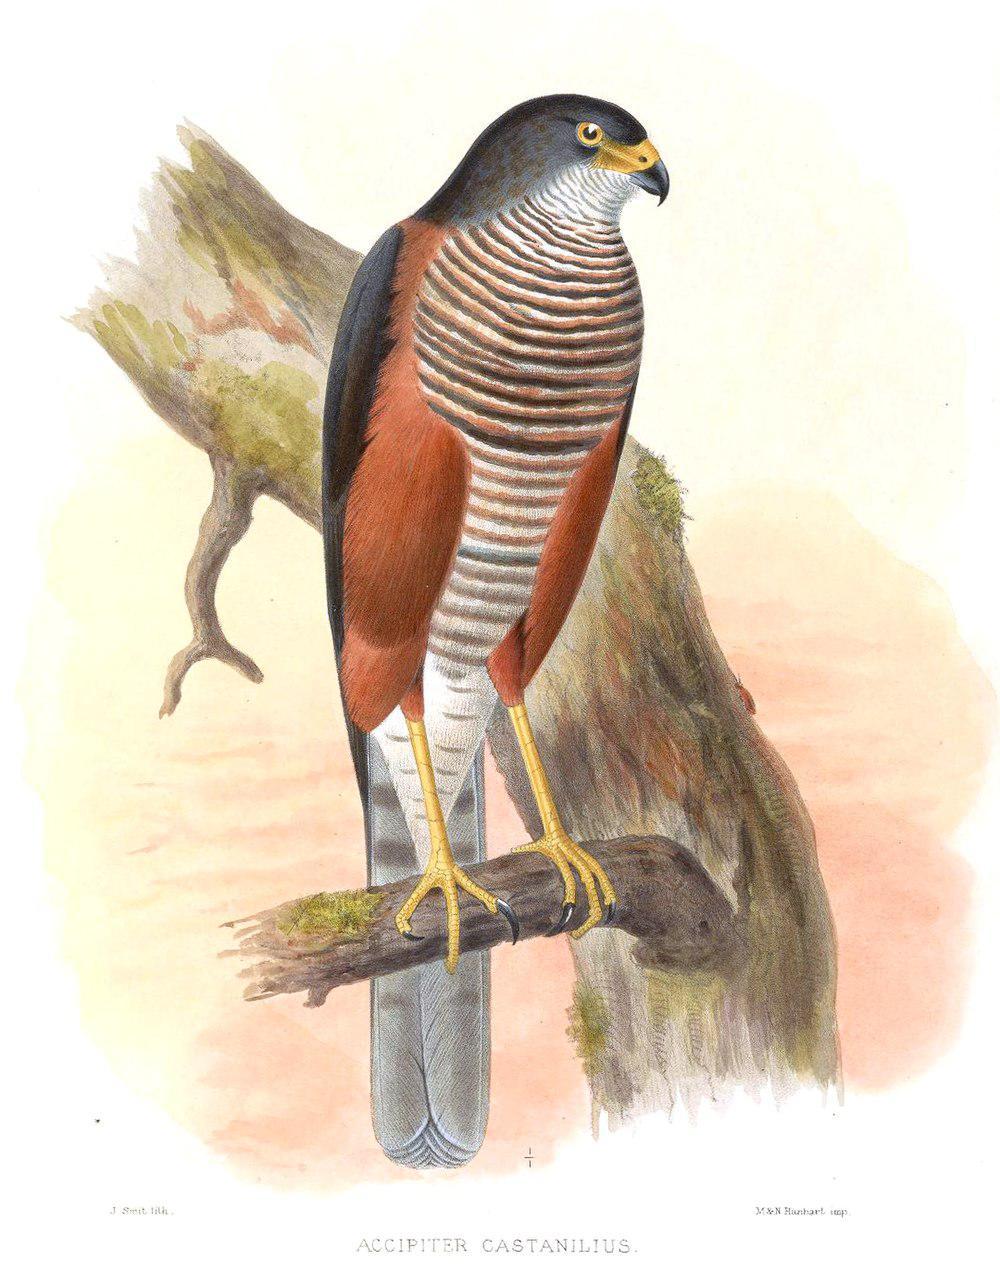 栗胁雀鹰 / Chestnut-flanked Sparrowhawk / Accipiter castanilius